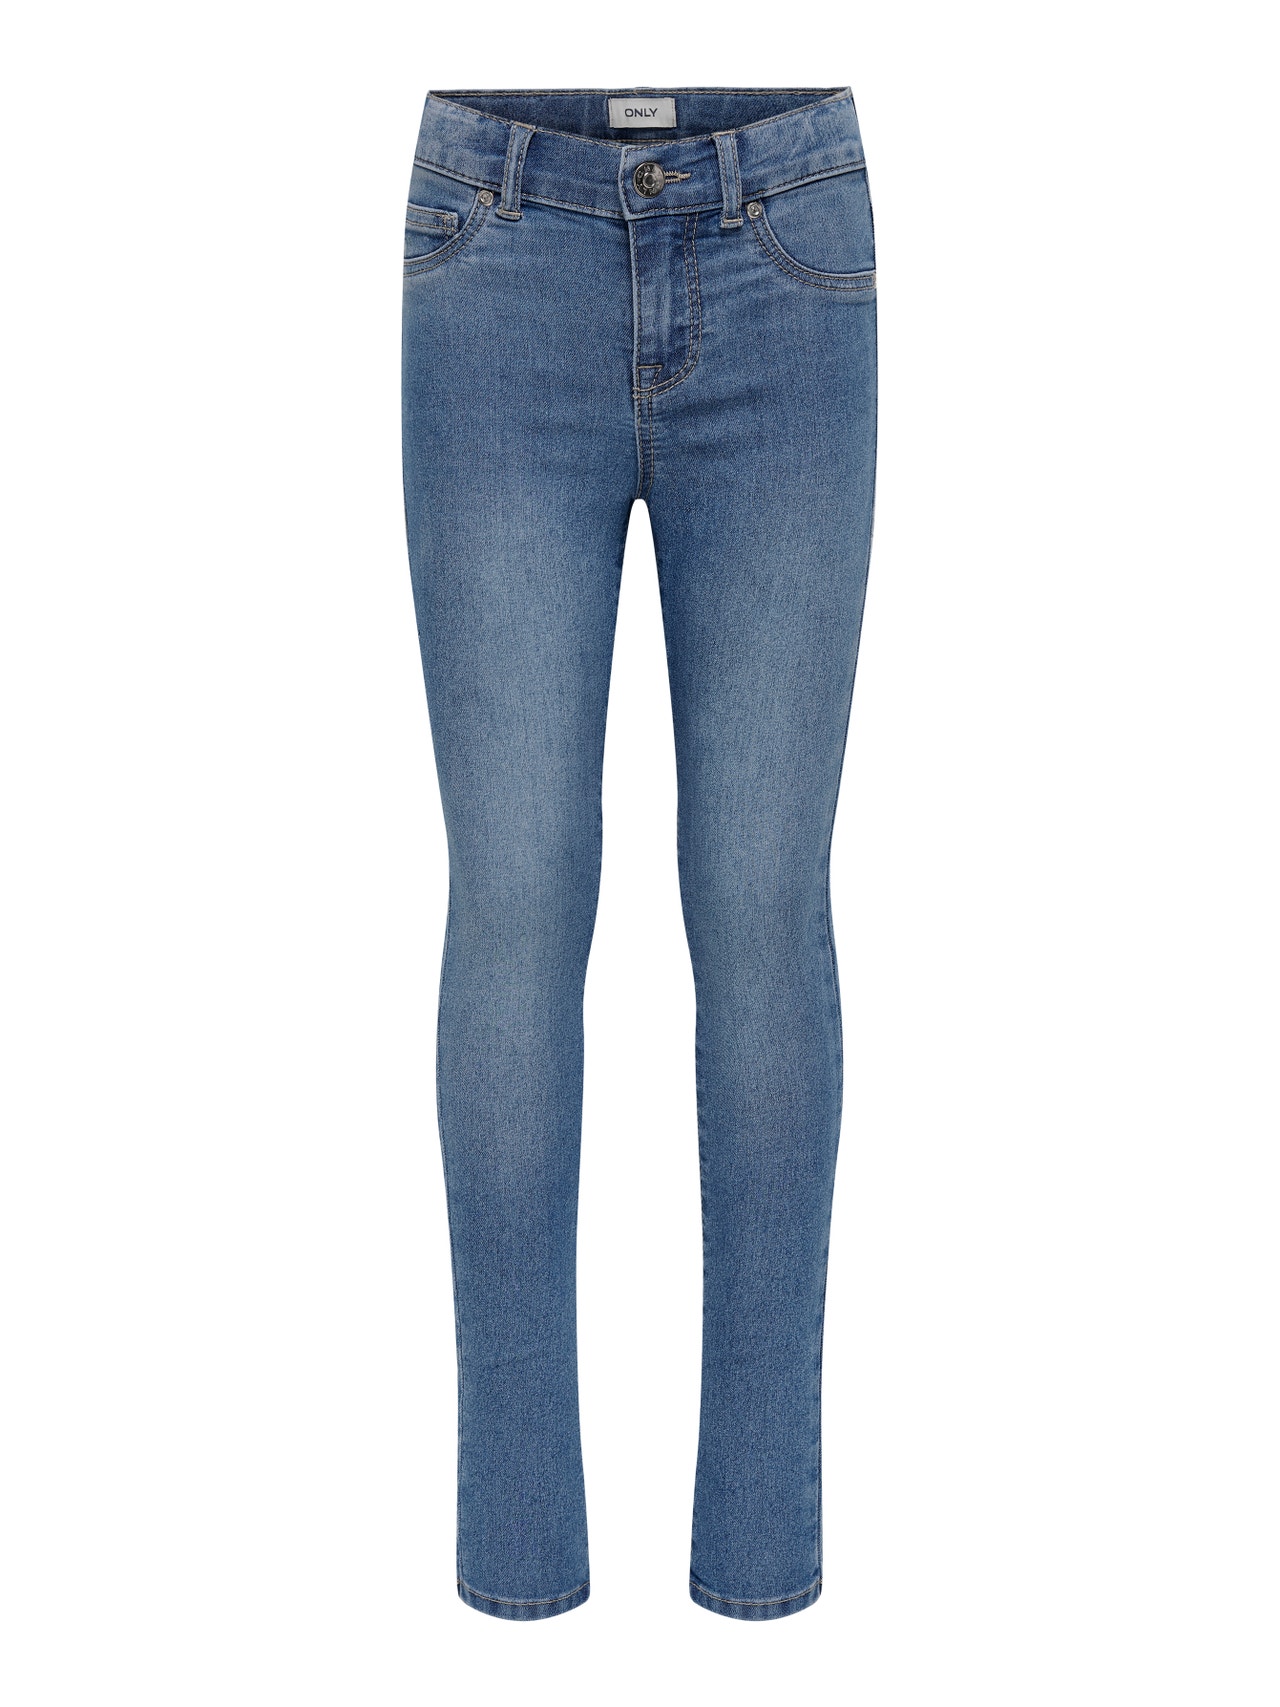 ONLY Skinny Fit Jeans -Light Blue Denim - 15274239